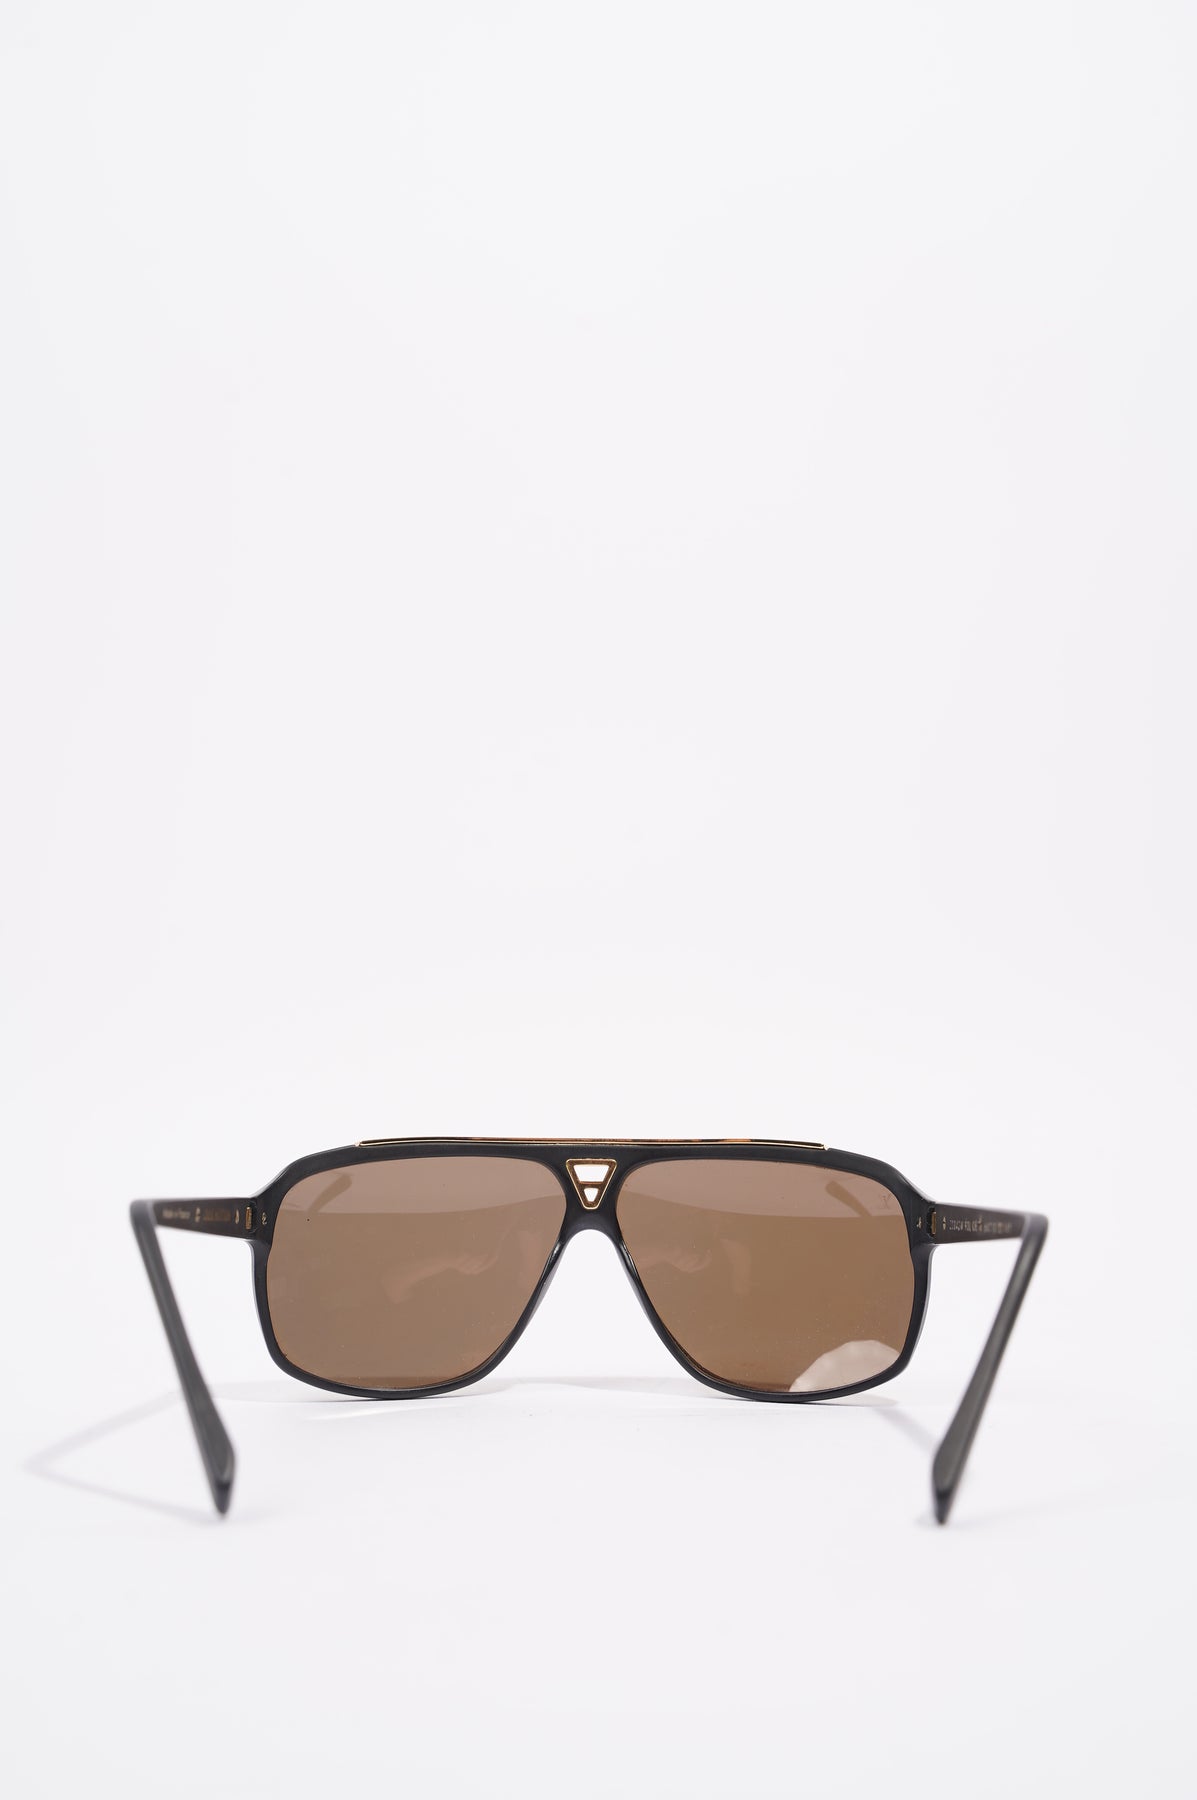 Louis Vuitton Evidence sunglasses authentication 